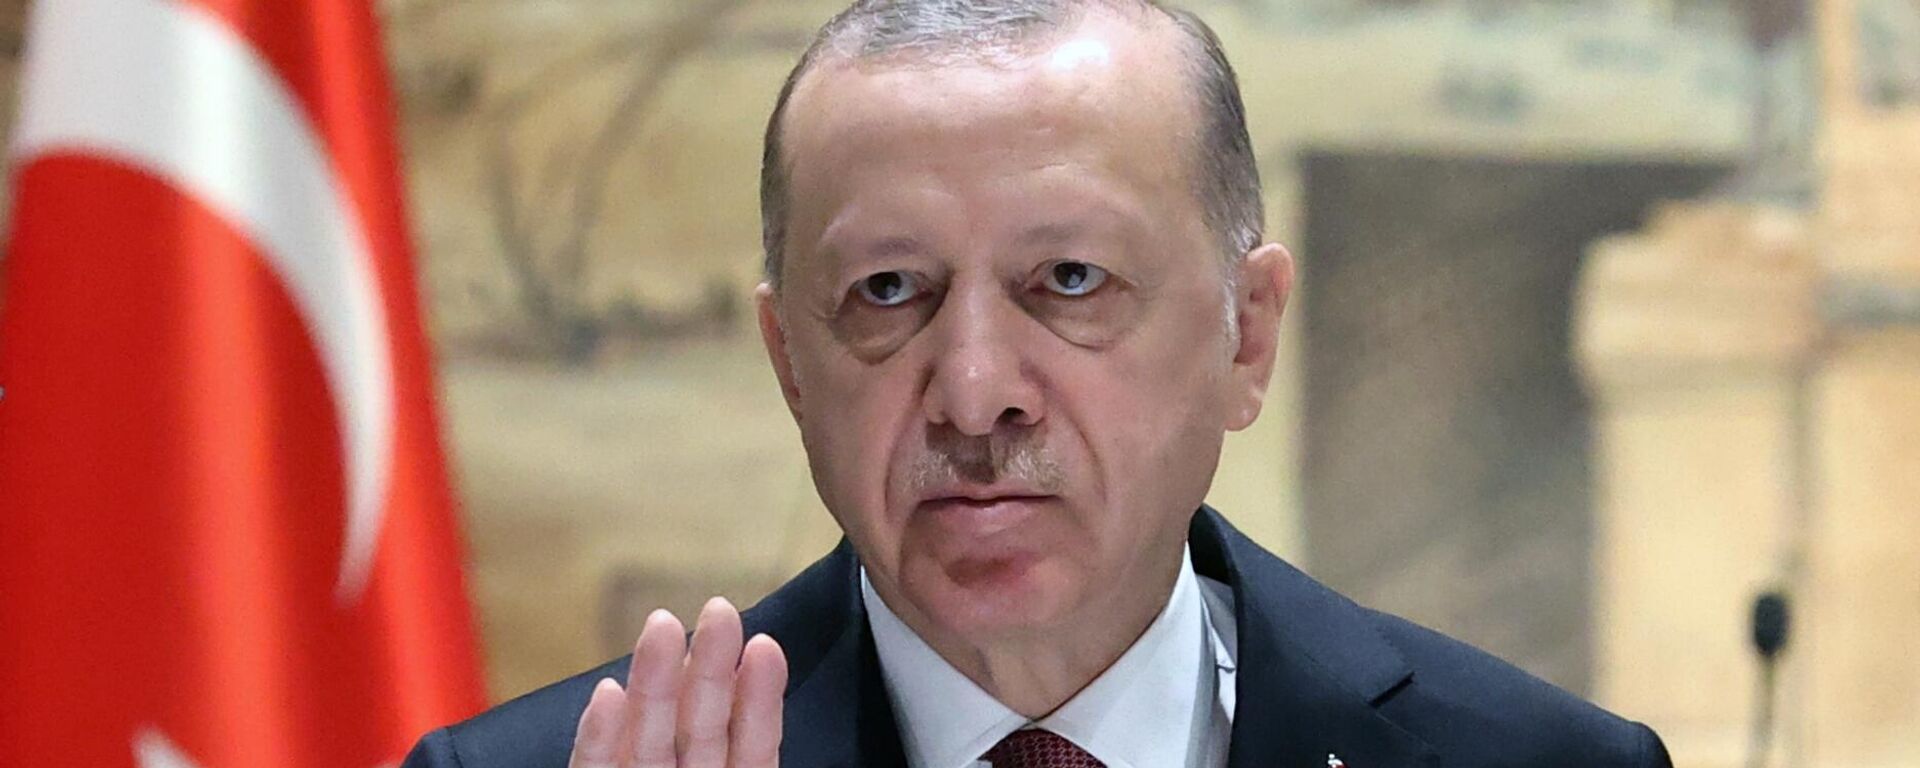 O presidente turco Recep Tayyip Erdogan discursa durante as negociações entre a Rússia e a Ucrânia no Palácio Dolmabahce, Istambul, Turquia  - Sputnik Brasil, 1920, 27.09.2022